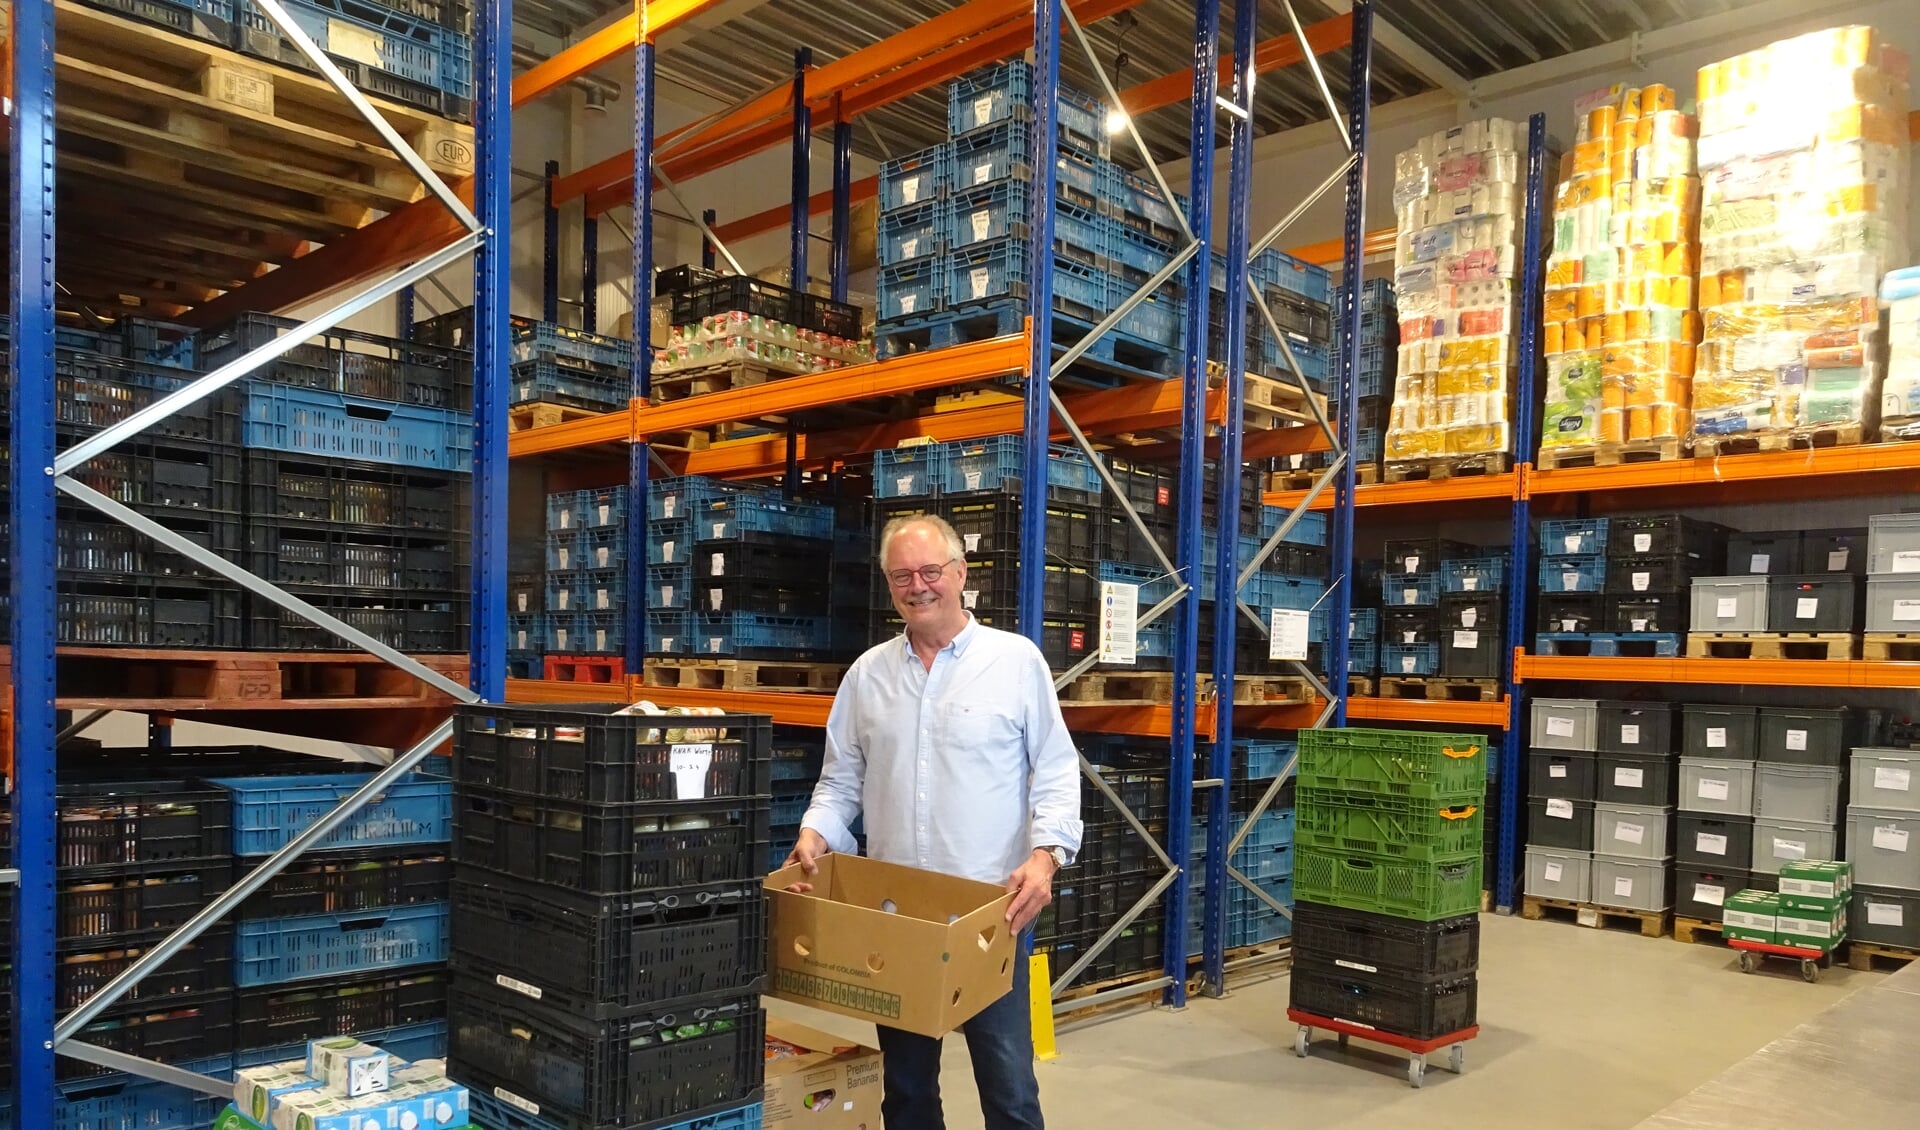 Voorzitter Dirk van Kampen: ‘De voordelen van één gezamenlijke locatie voor opslag en verdeling van voedsel zijn groot.'